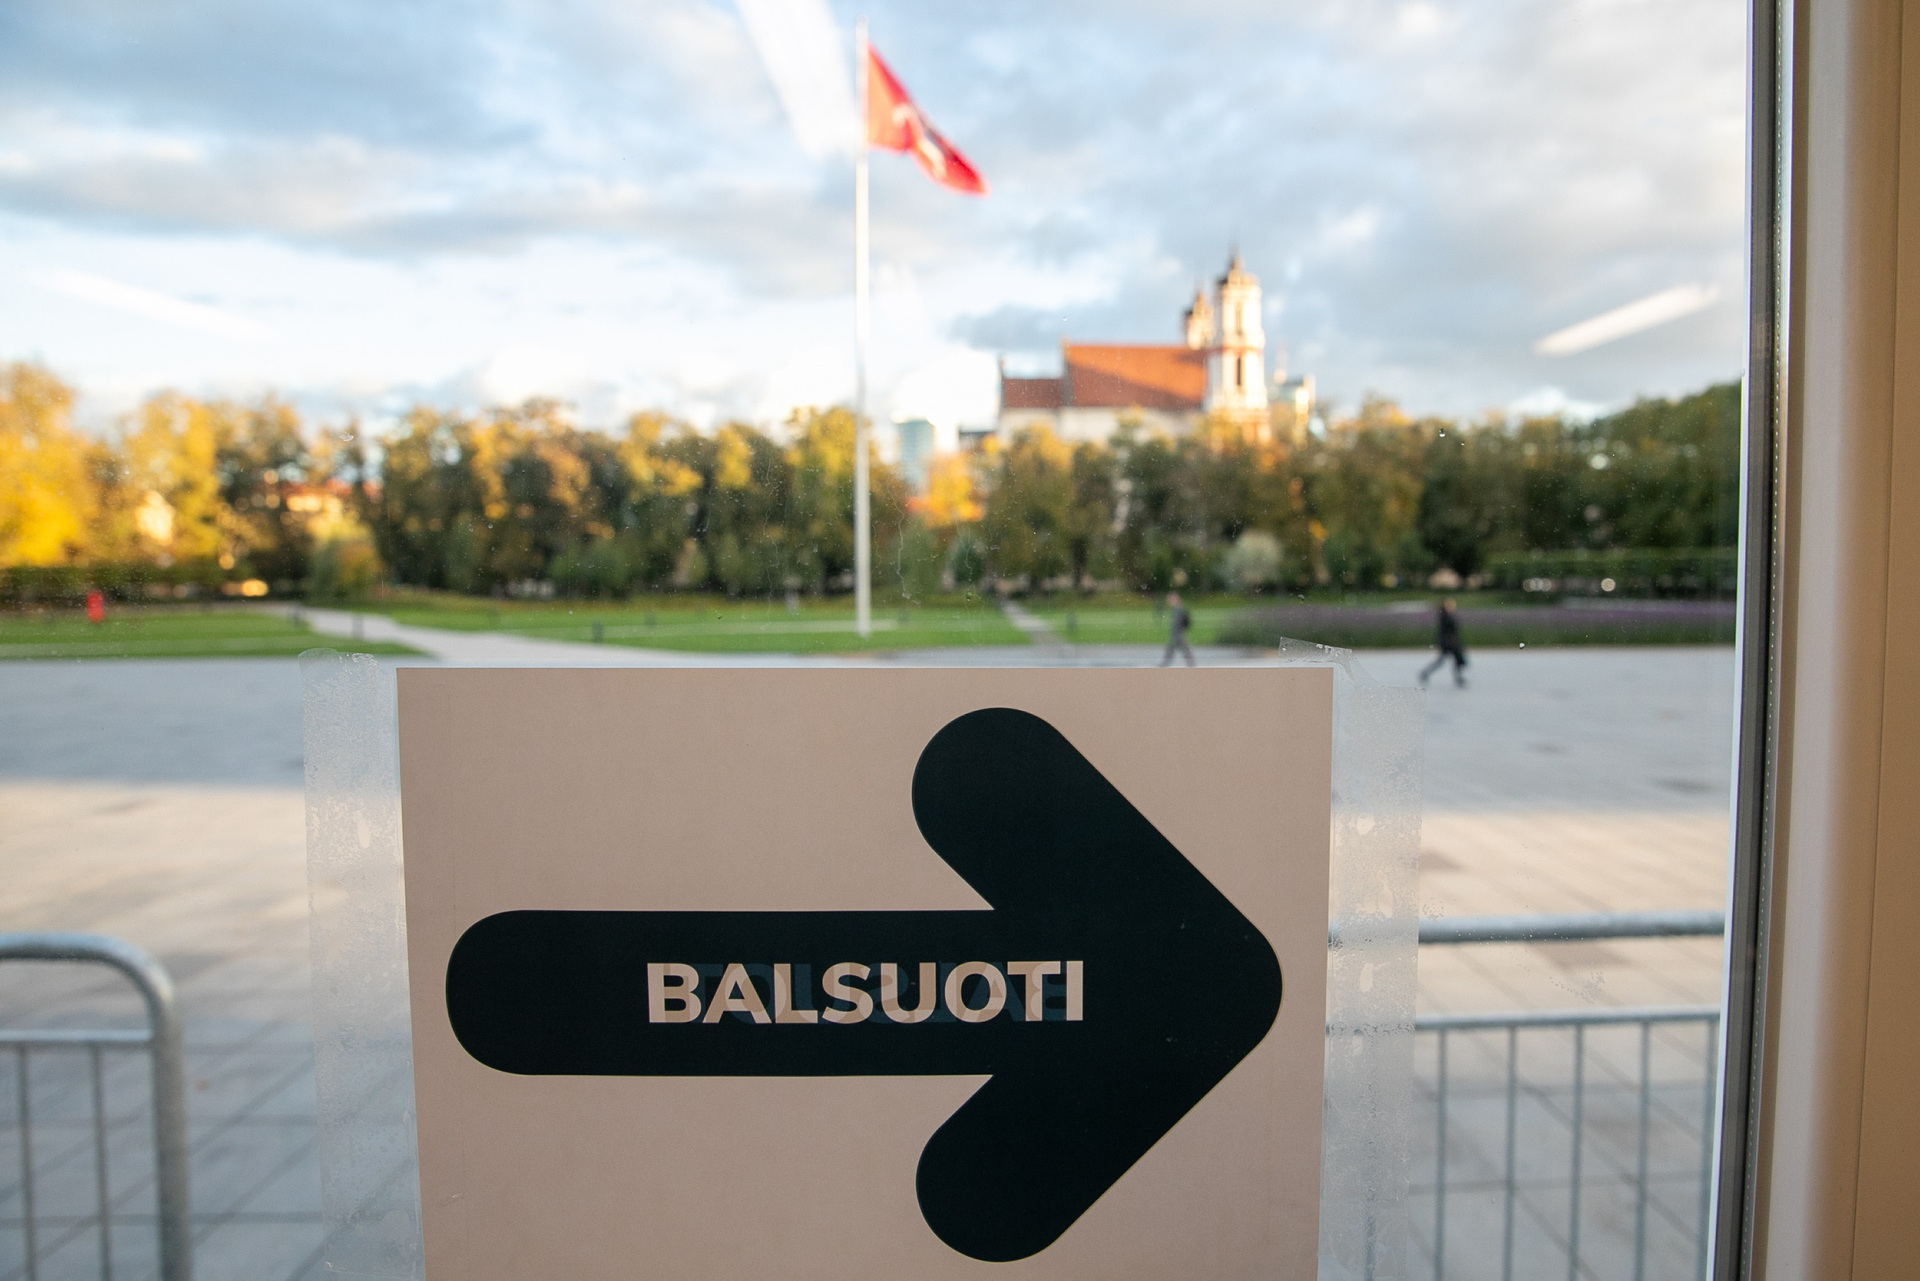 За два дня досрочного голосования на избирательные участки пришли более 96 тыс. граждан Литвы